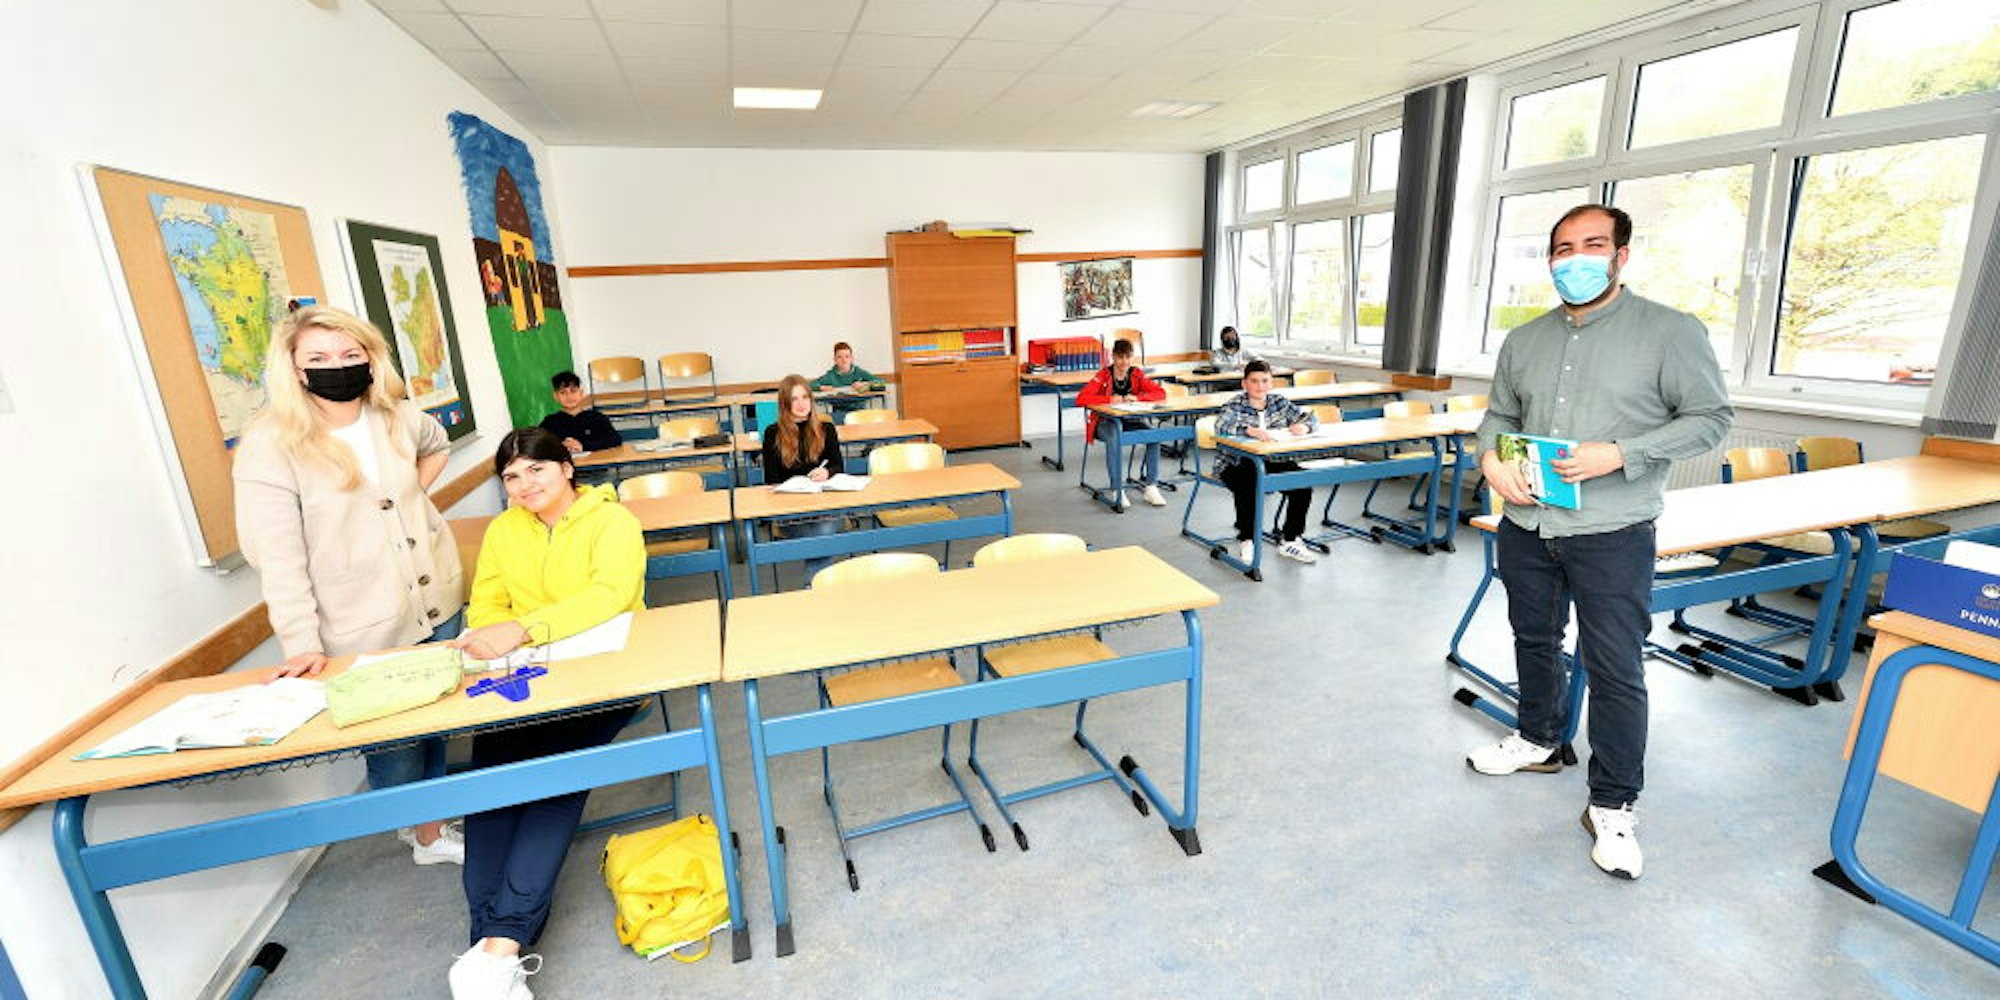 In der Ferienschule bekamen 24 Schüler während der Osterferien Nachhilfe im Fach Mathematik.